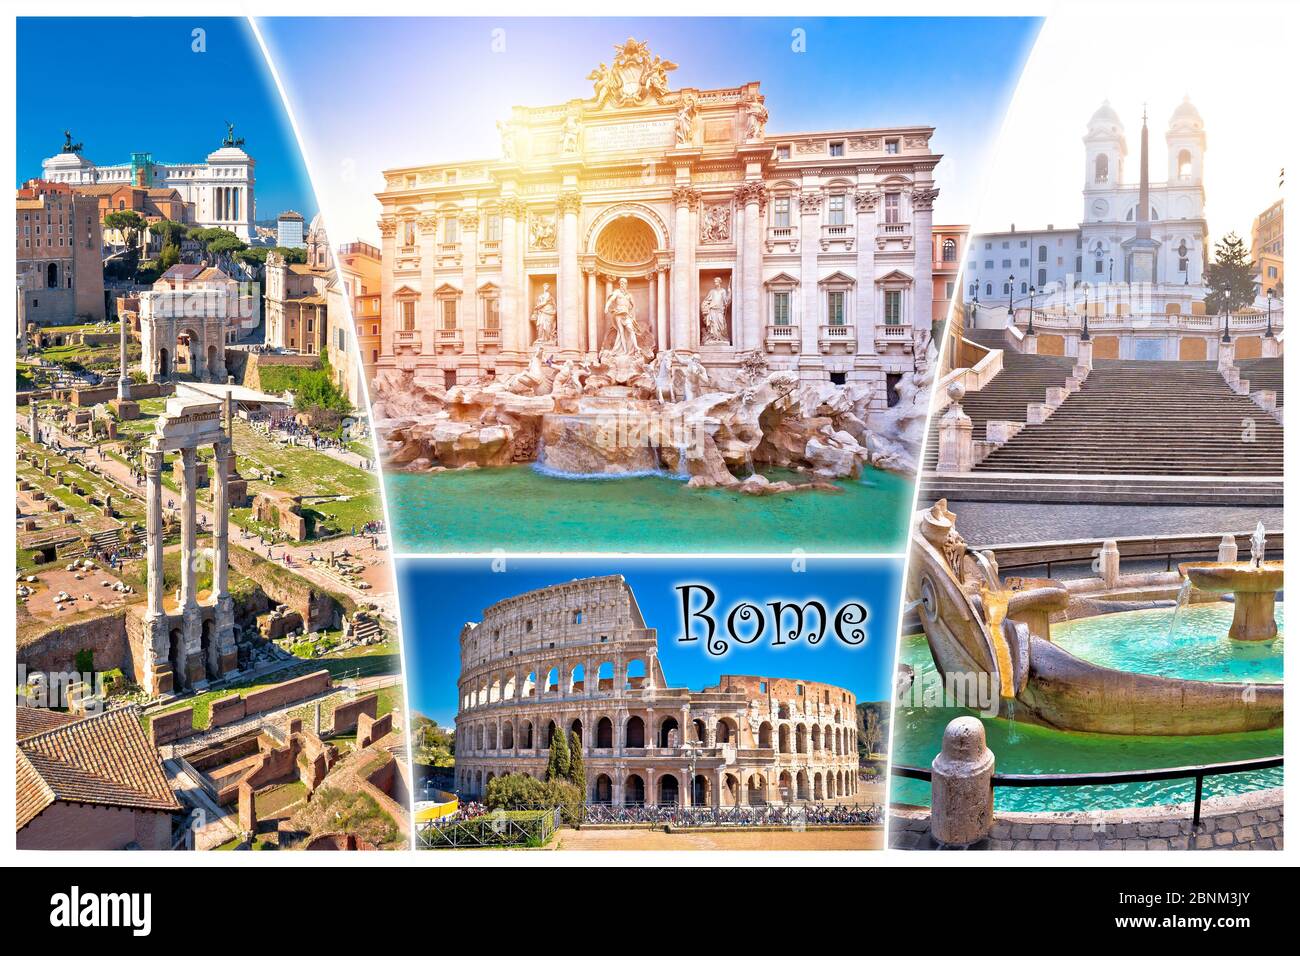 Rom Postkarte. Ewige Stadt Rom berühmte Sehenswürdigkeiten Touristen Postkarte Ansicht, mit dem Namen der Stadt Etikett. Hauptstadt Italiens. Stockfoto